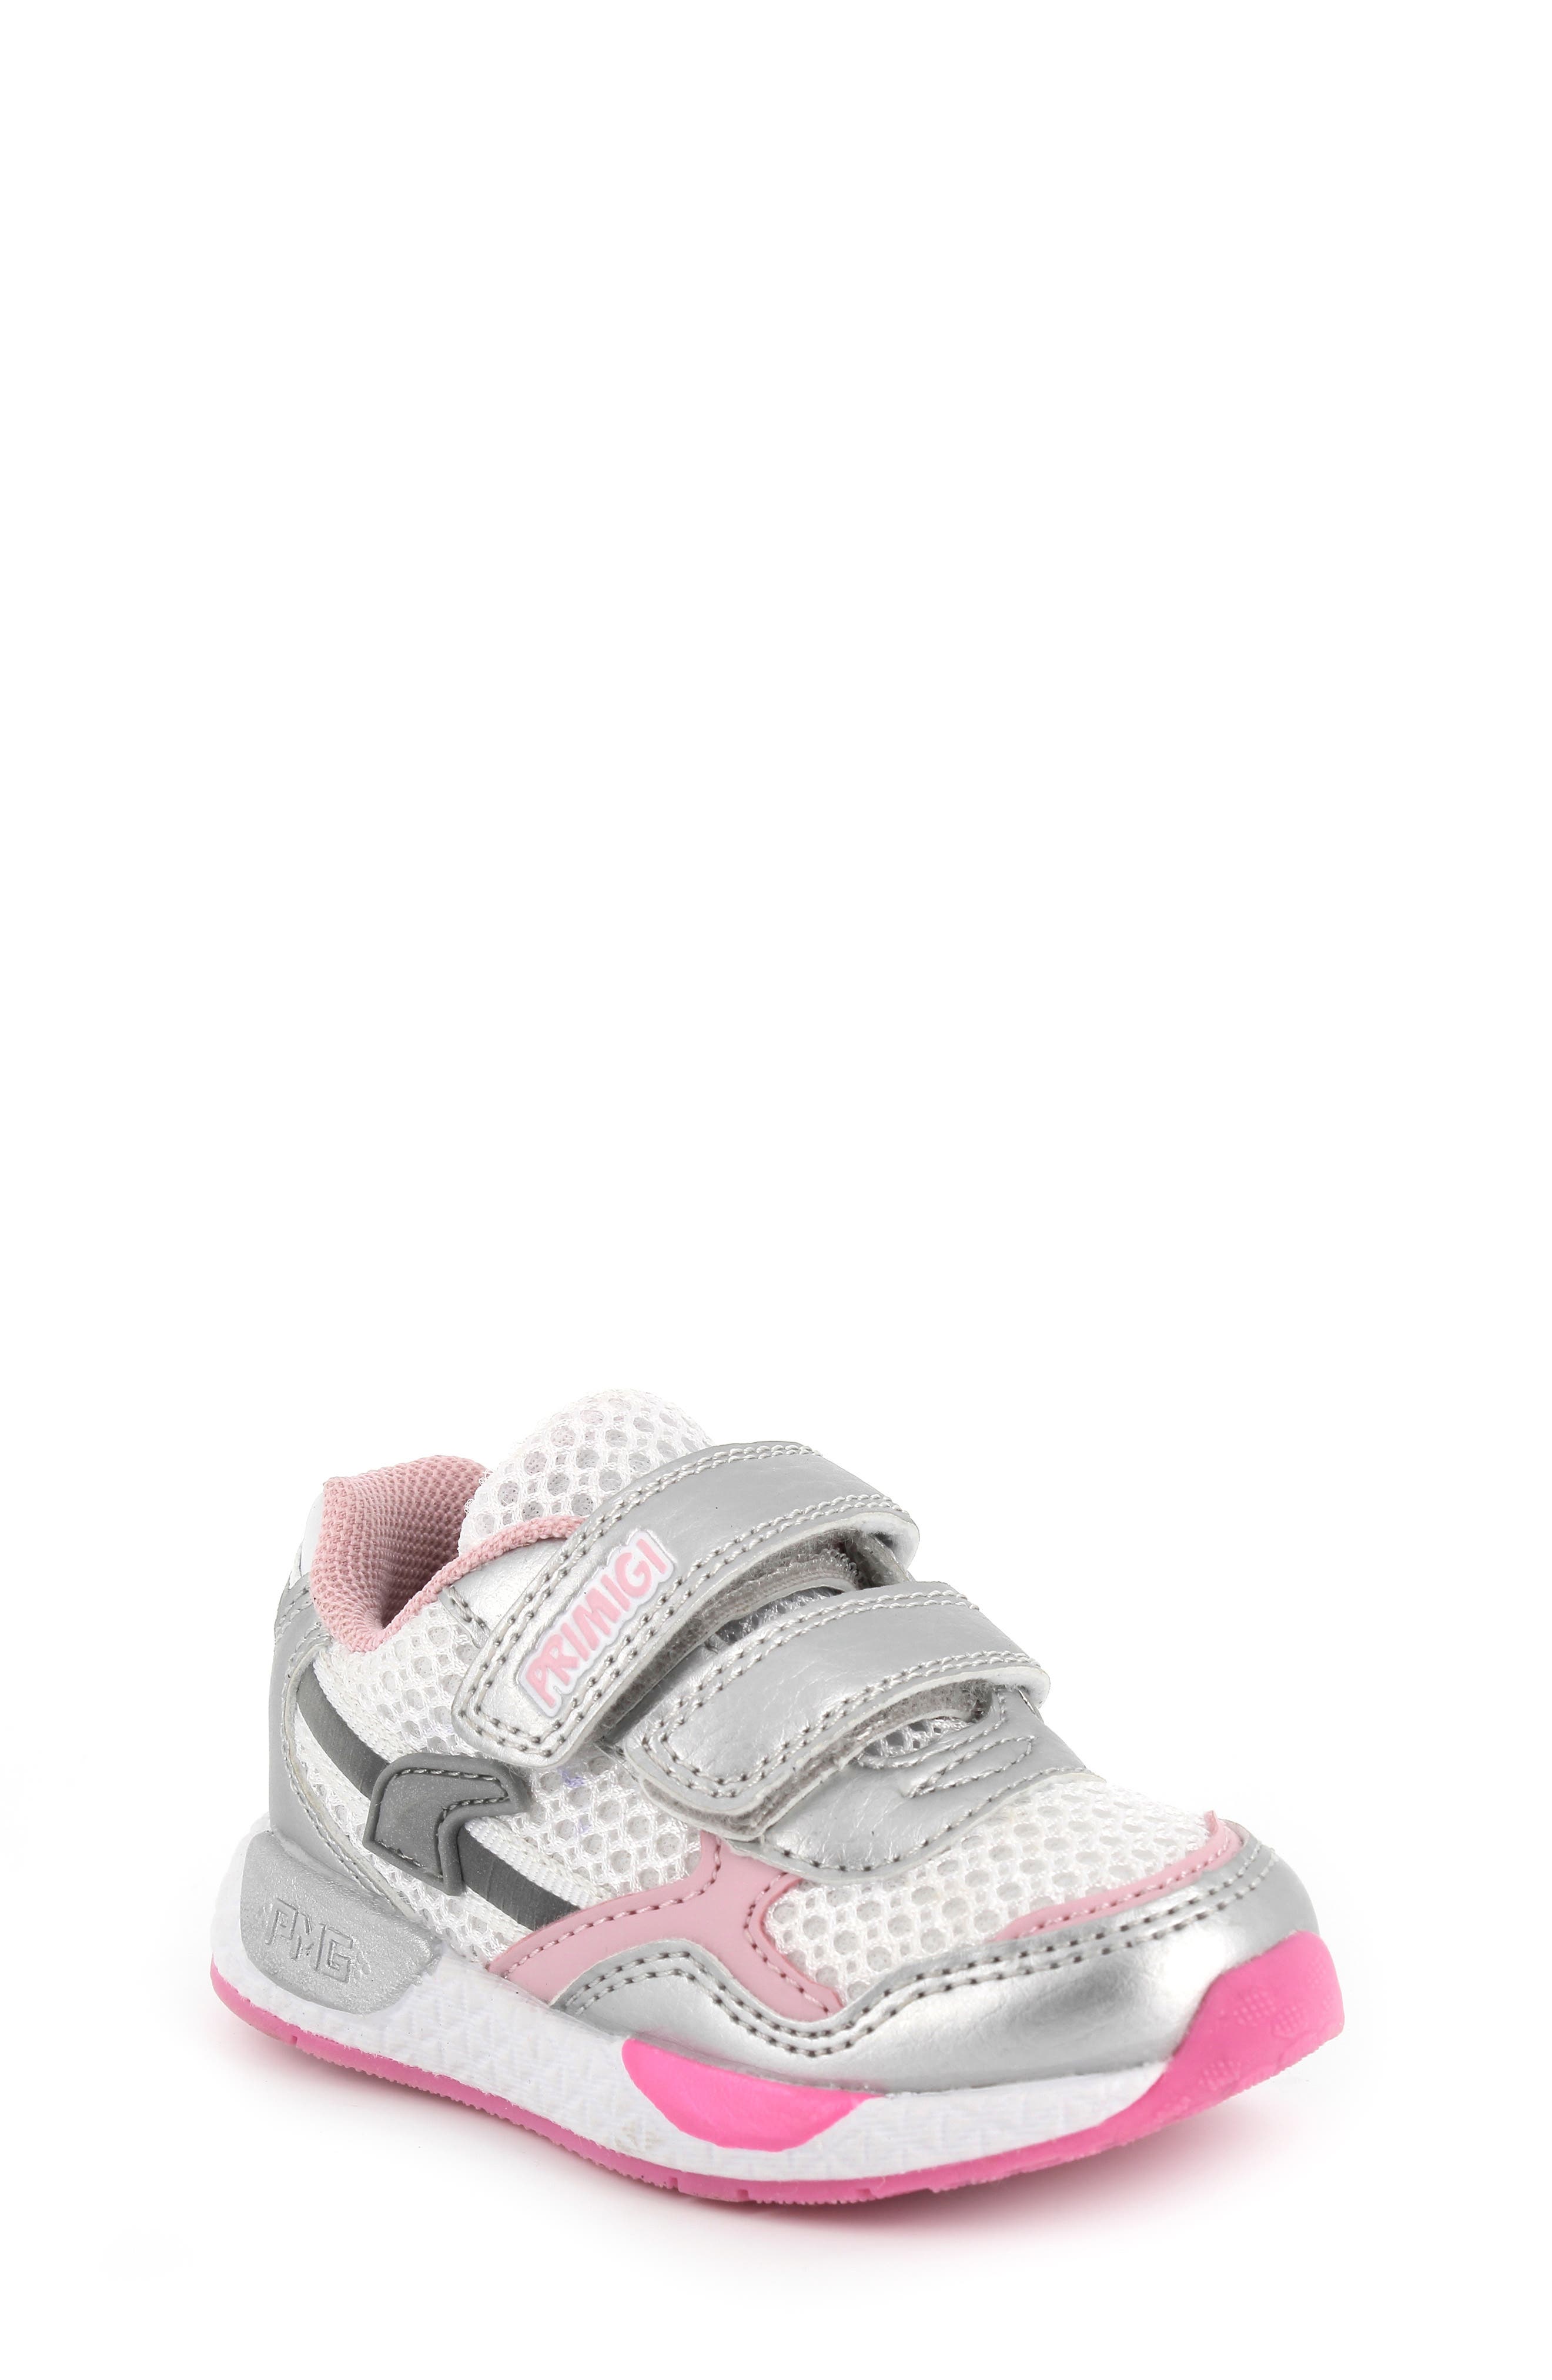 Sneakers Basses bébé Fille Primigi Paa 44544 